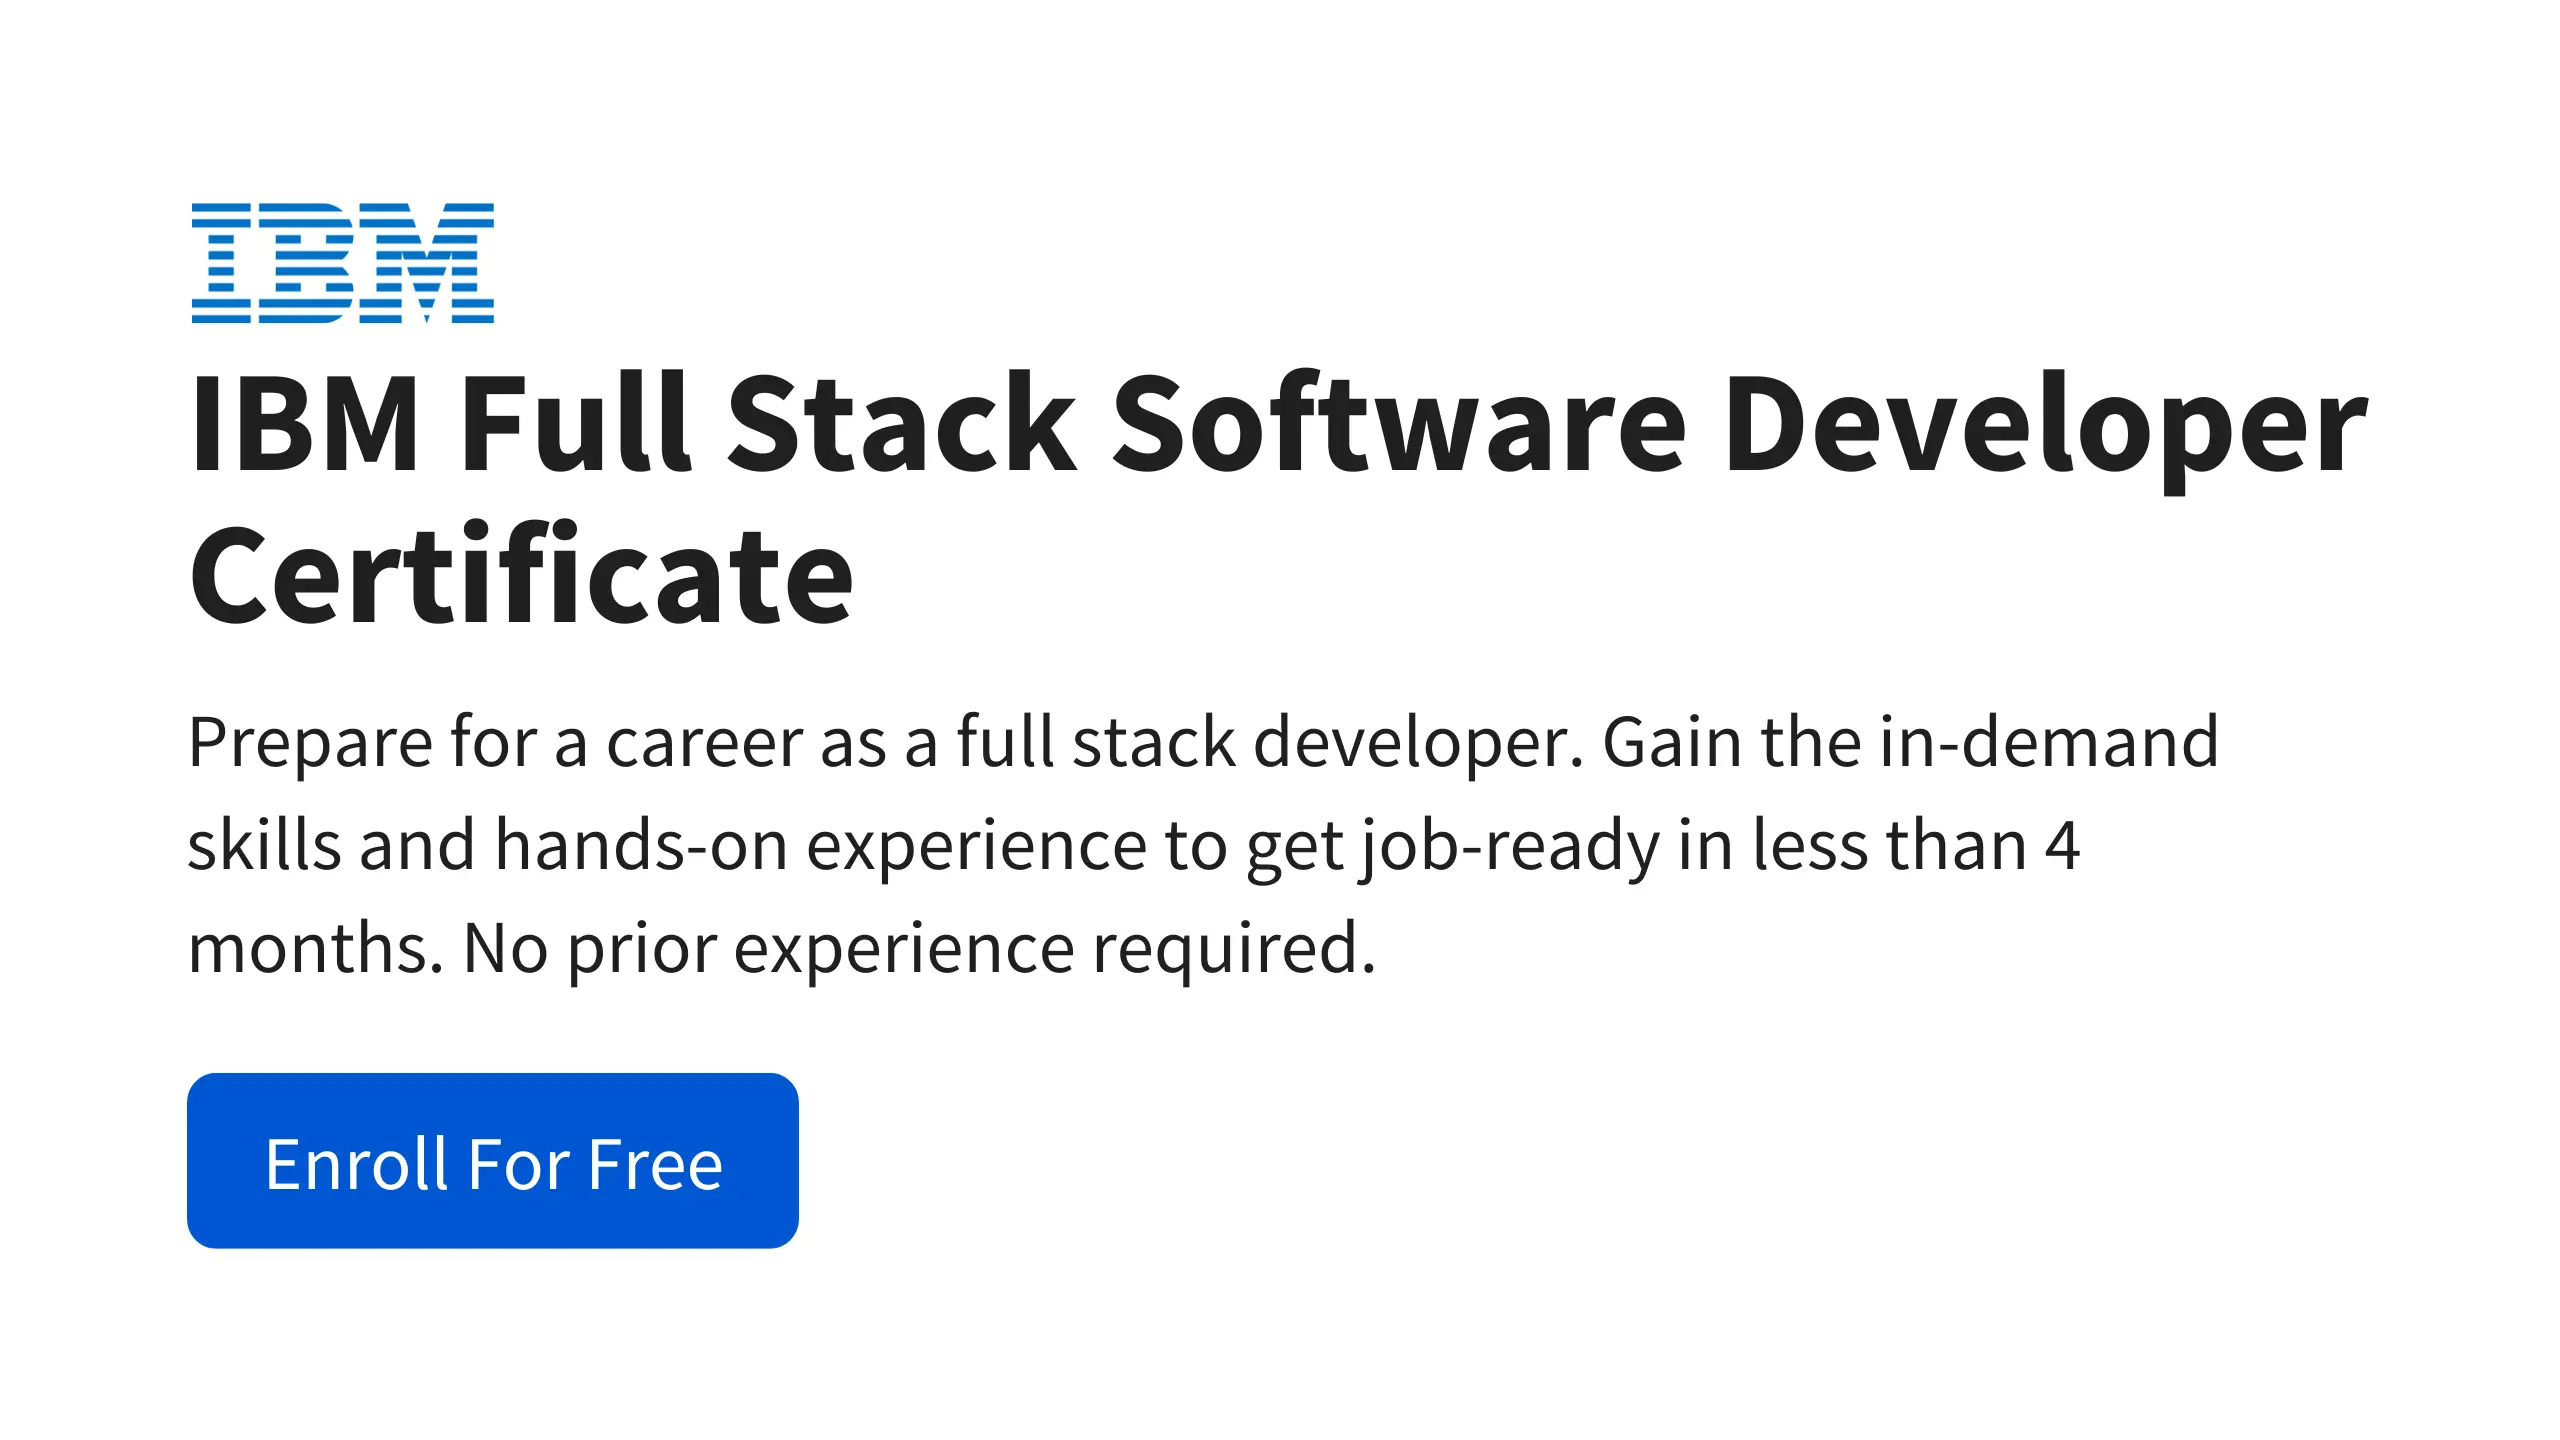 IBM Full Stack Software Developer Certificate